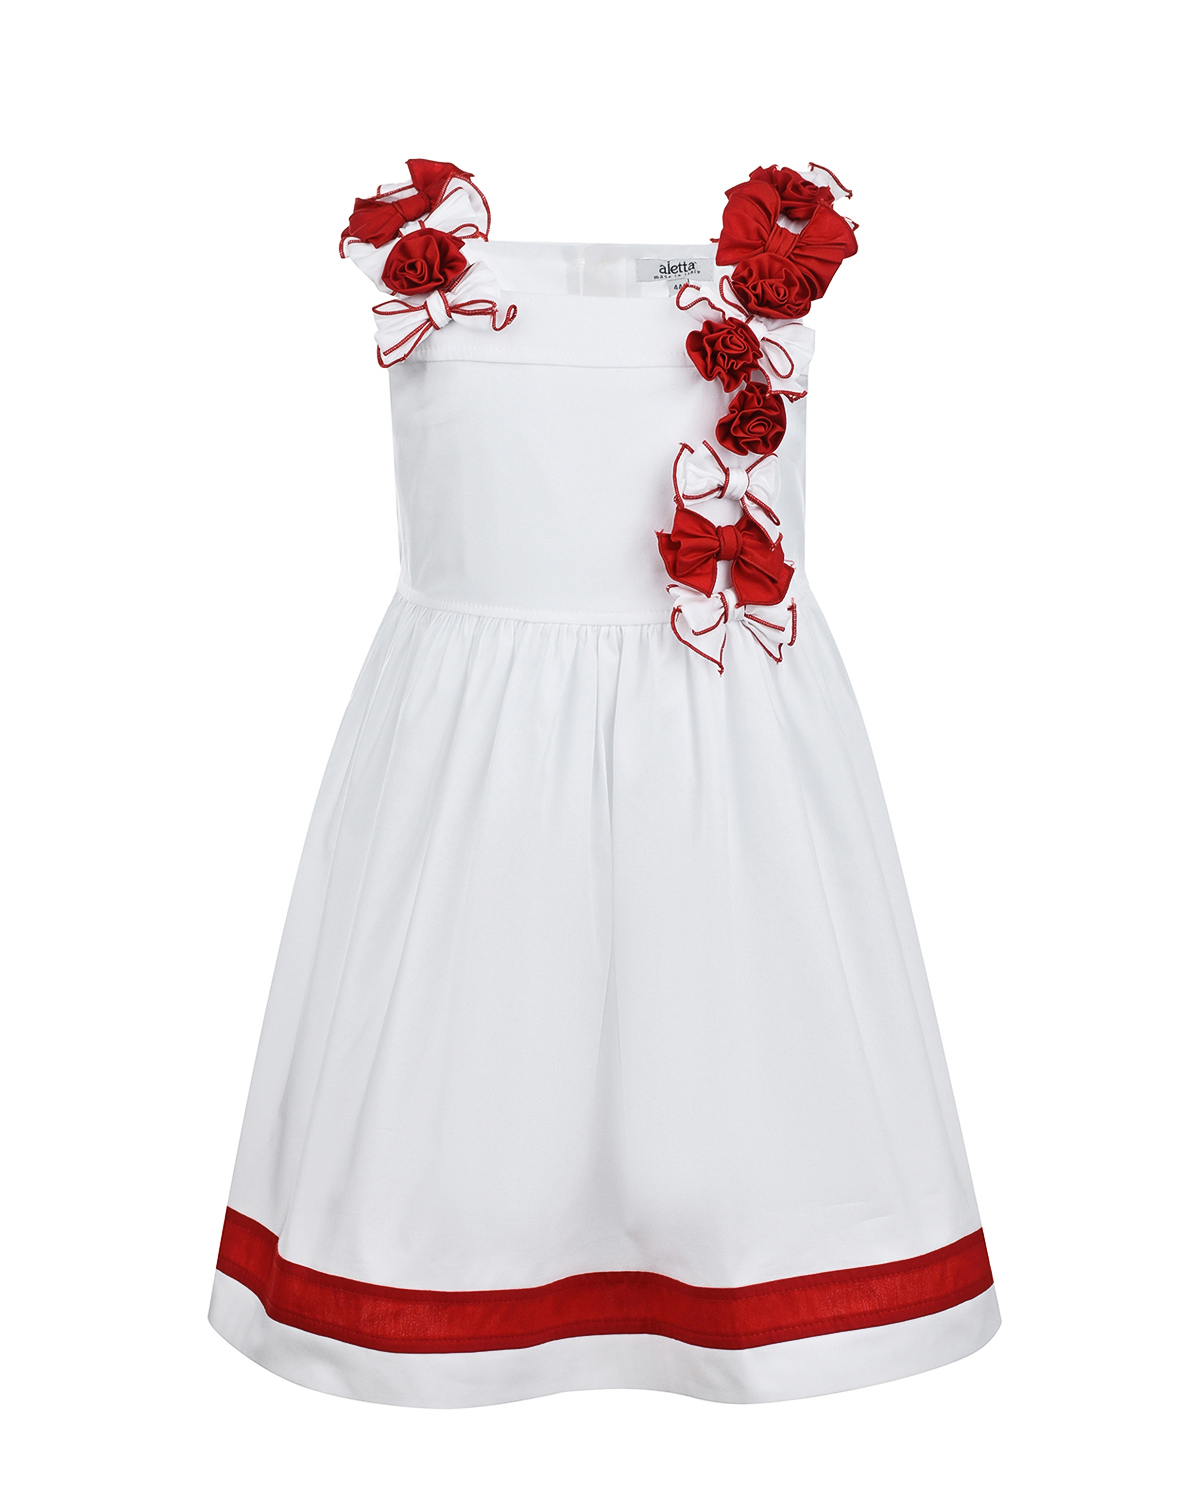 Белое платье с красными цветами Aletta детское, размер 98 - фото 1